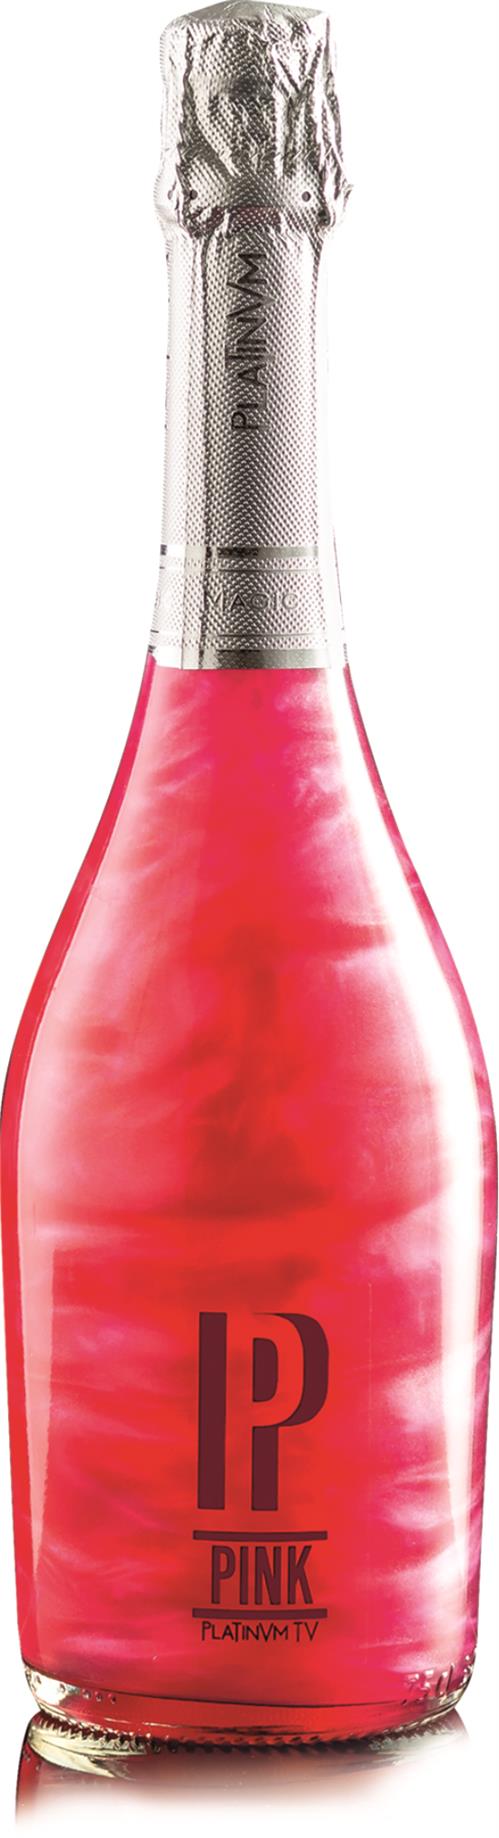 Platinvm mousserende vin, Pink 75 cl. 5,5%